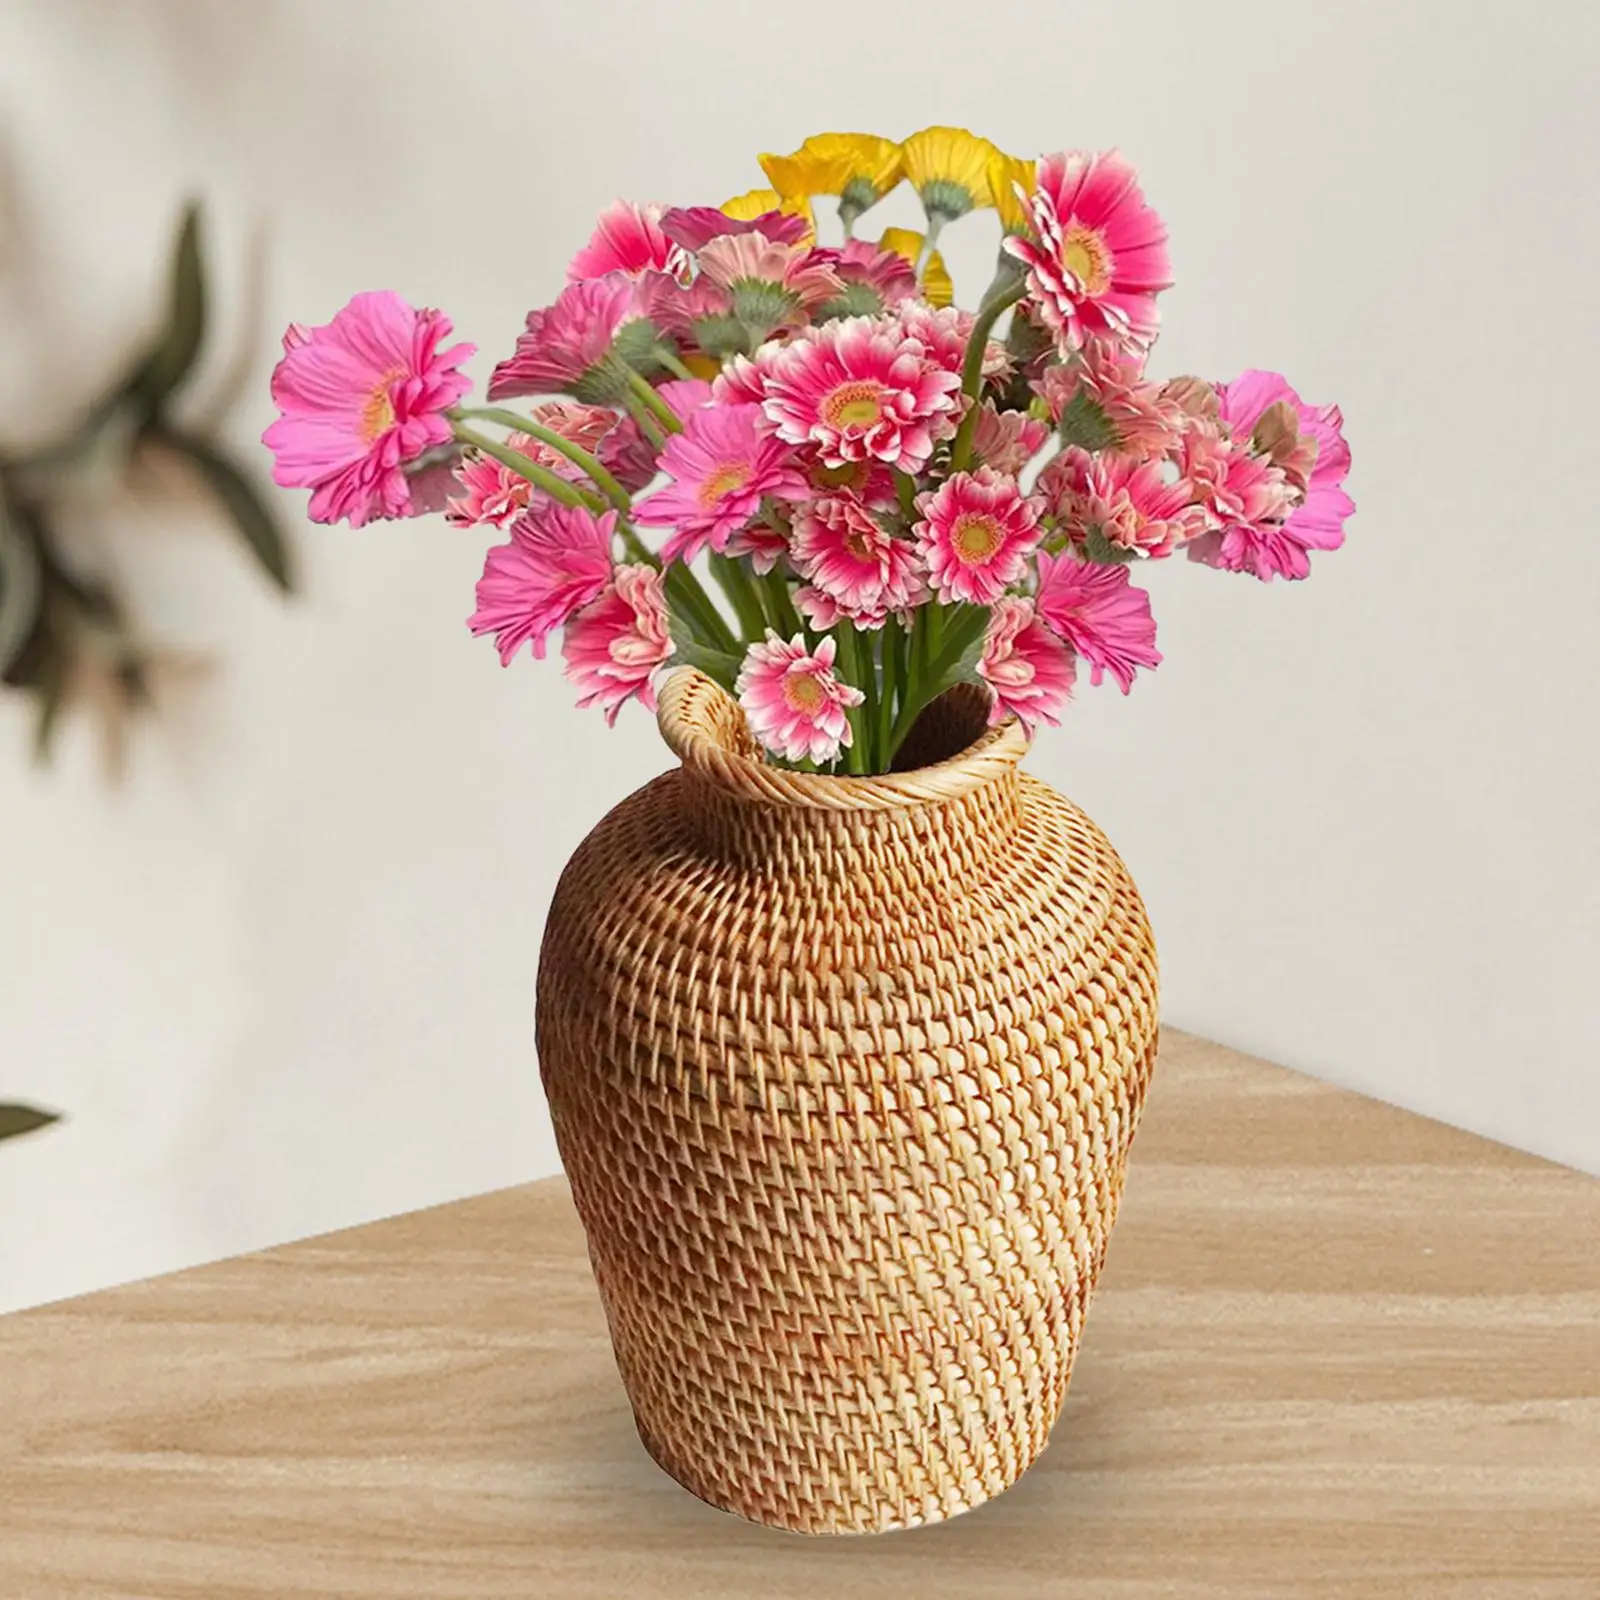 Handwoven Rattan Flower Basket Bottle Storage Basket Dried Flower Vase for Restaurant Drawing Room Cafe Desk Home Decoration